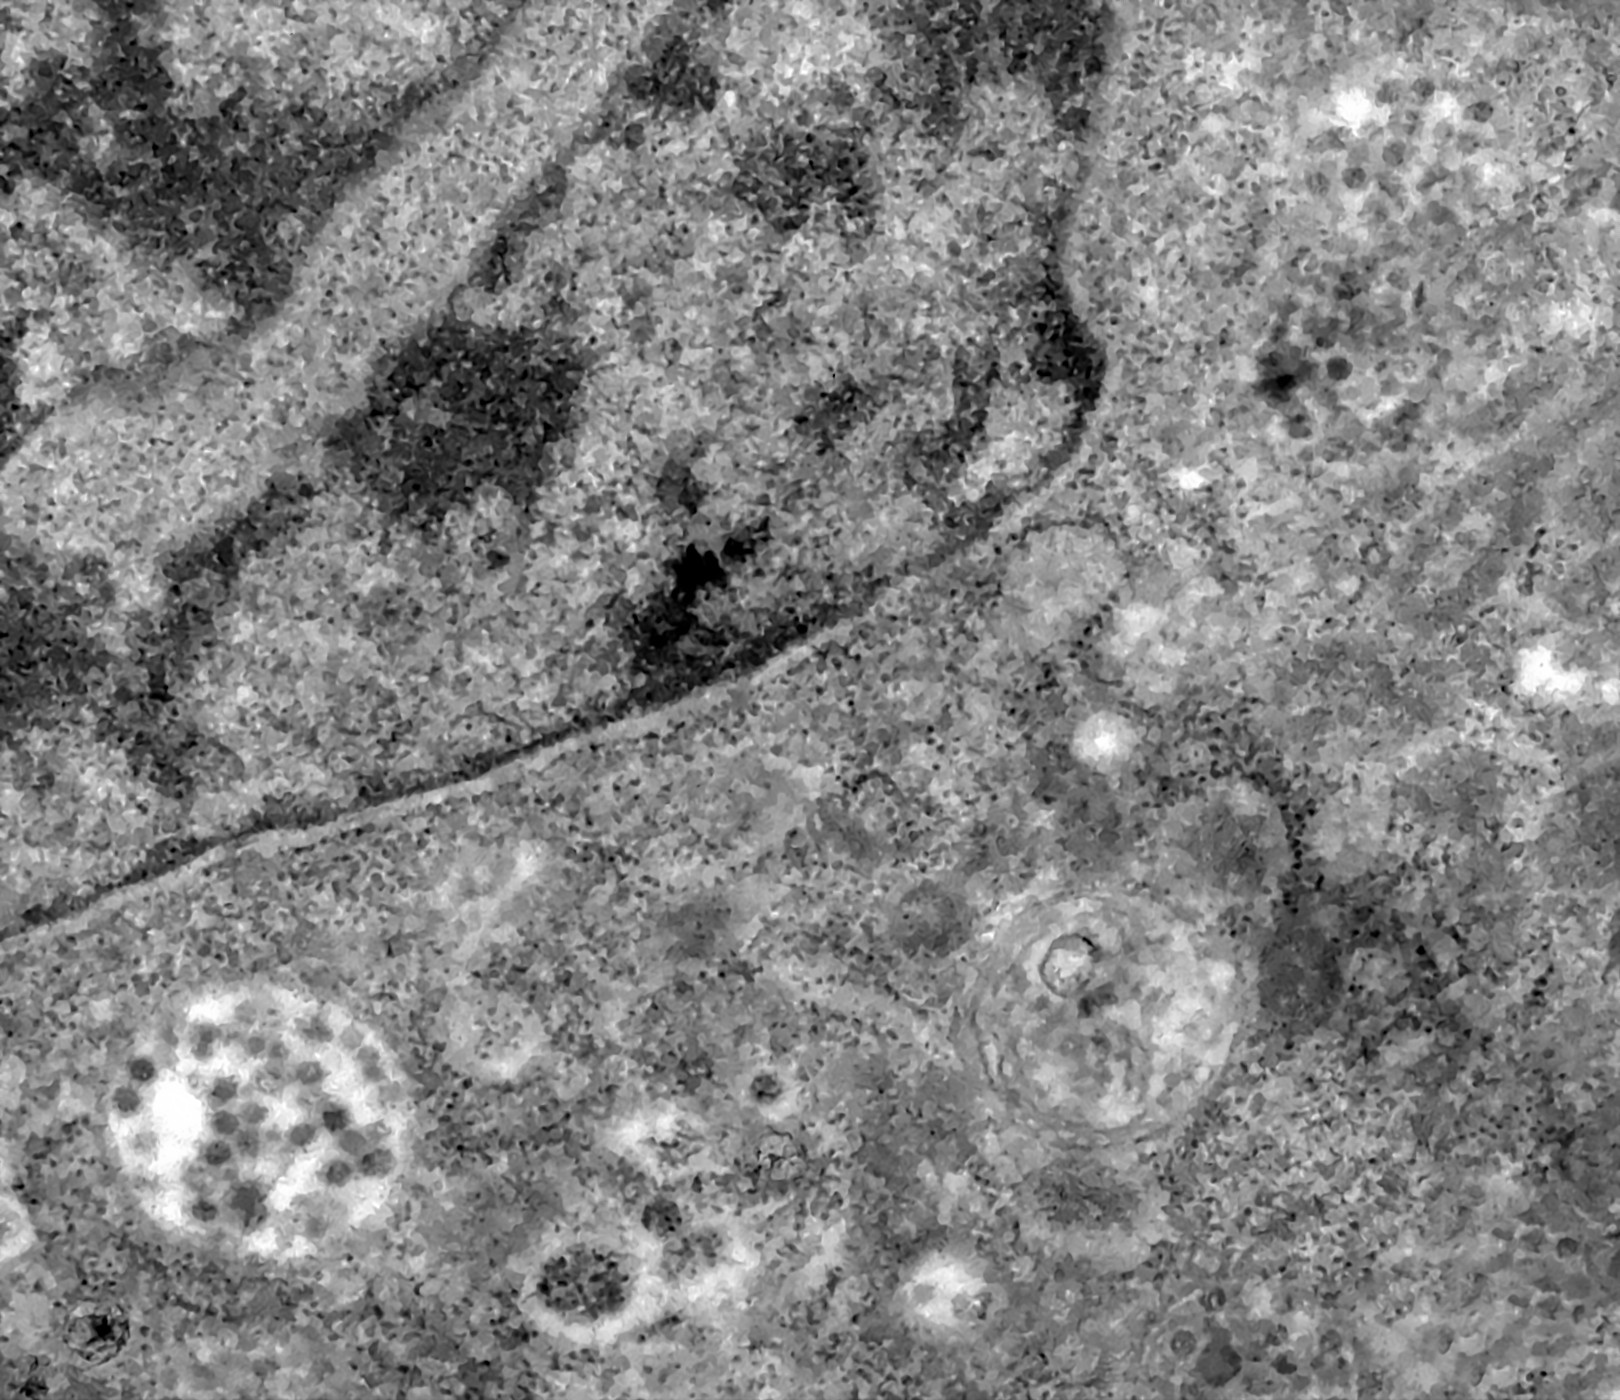 Partículas virais podem ser observadas dentro da célula (Foto: Fiocruz)